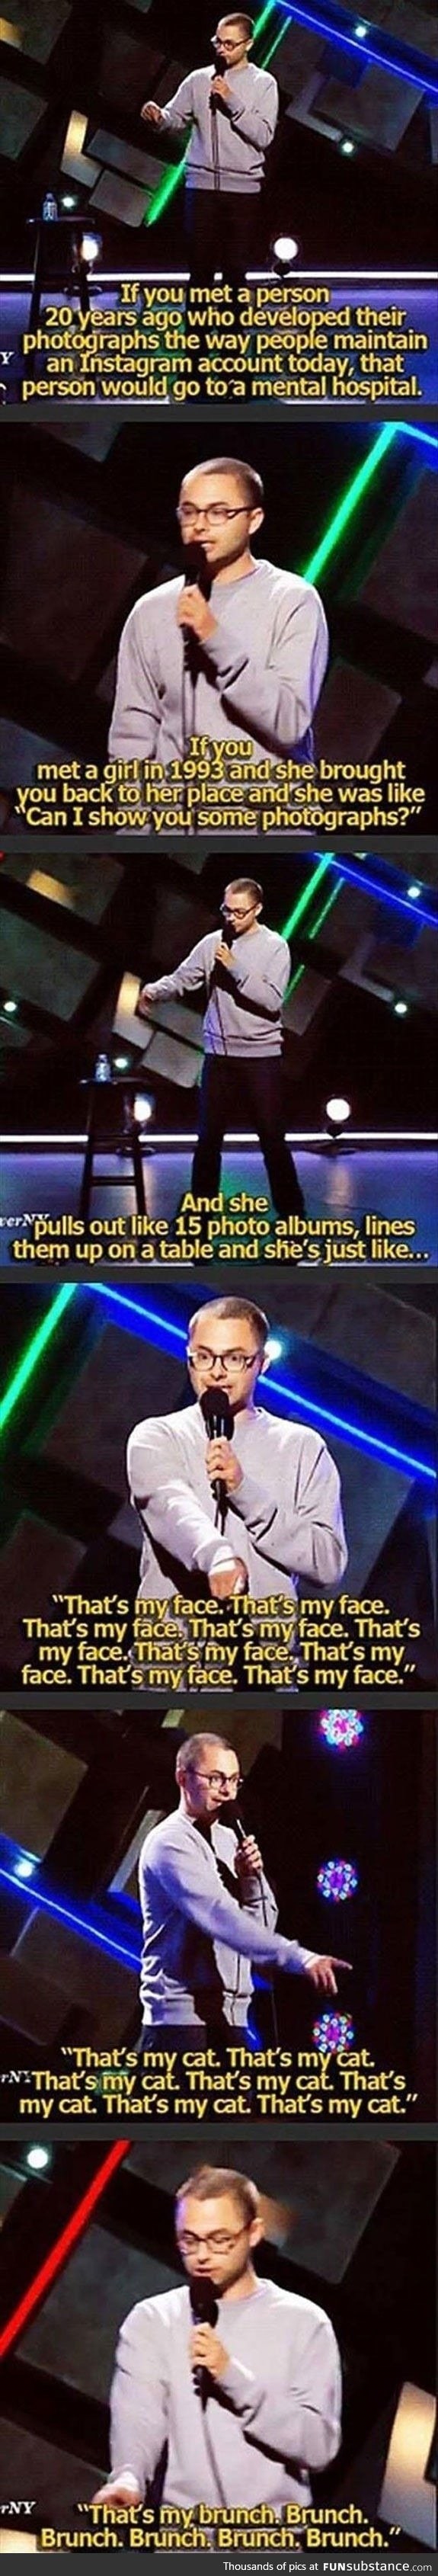 Instagram vs photographs